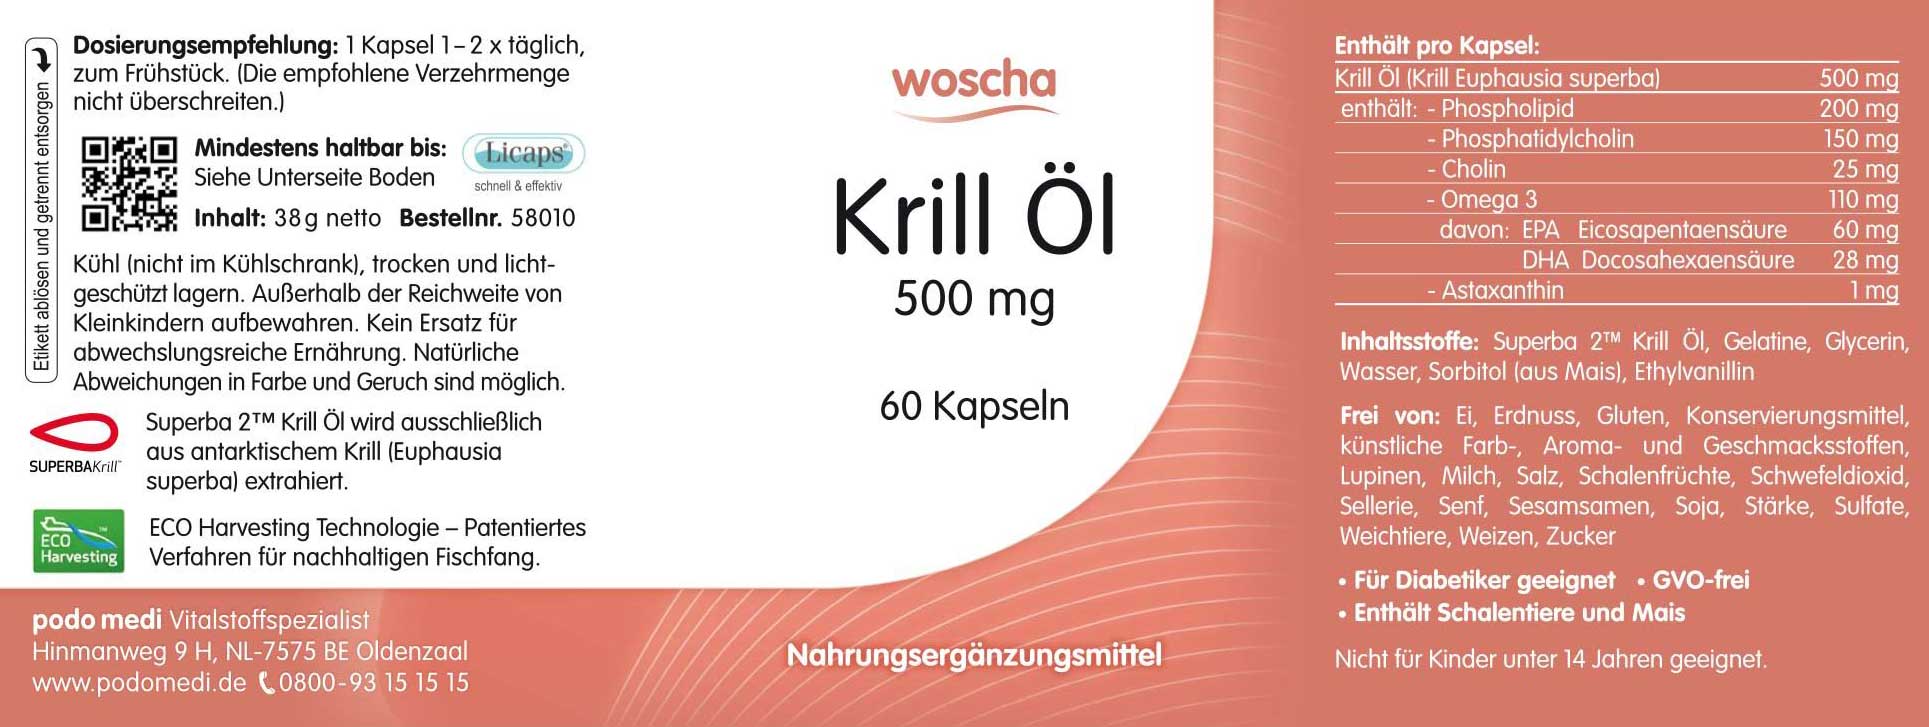 Woscha Krill Öl von podo medi beinhaltet 60 Kapseln je 500 Milligramm Etikett